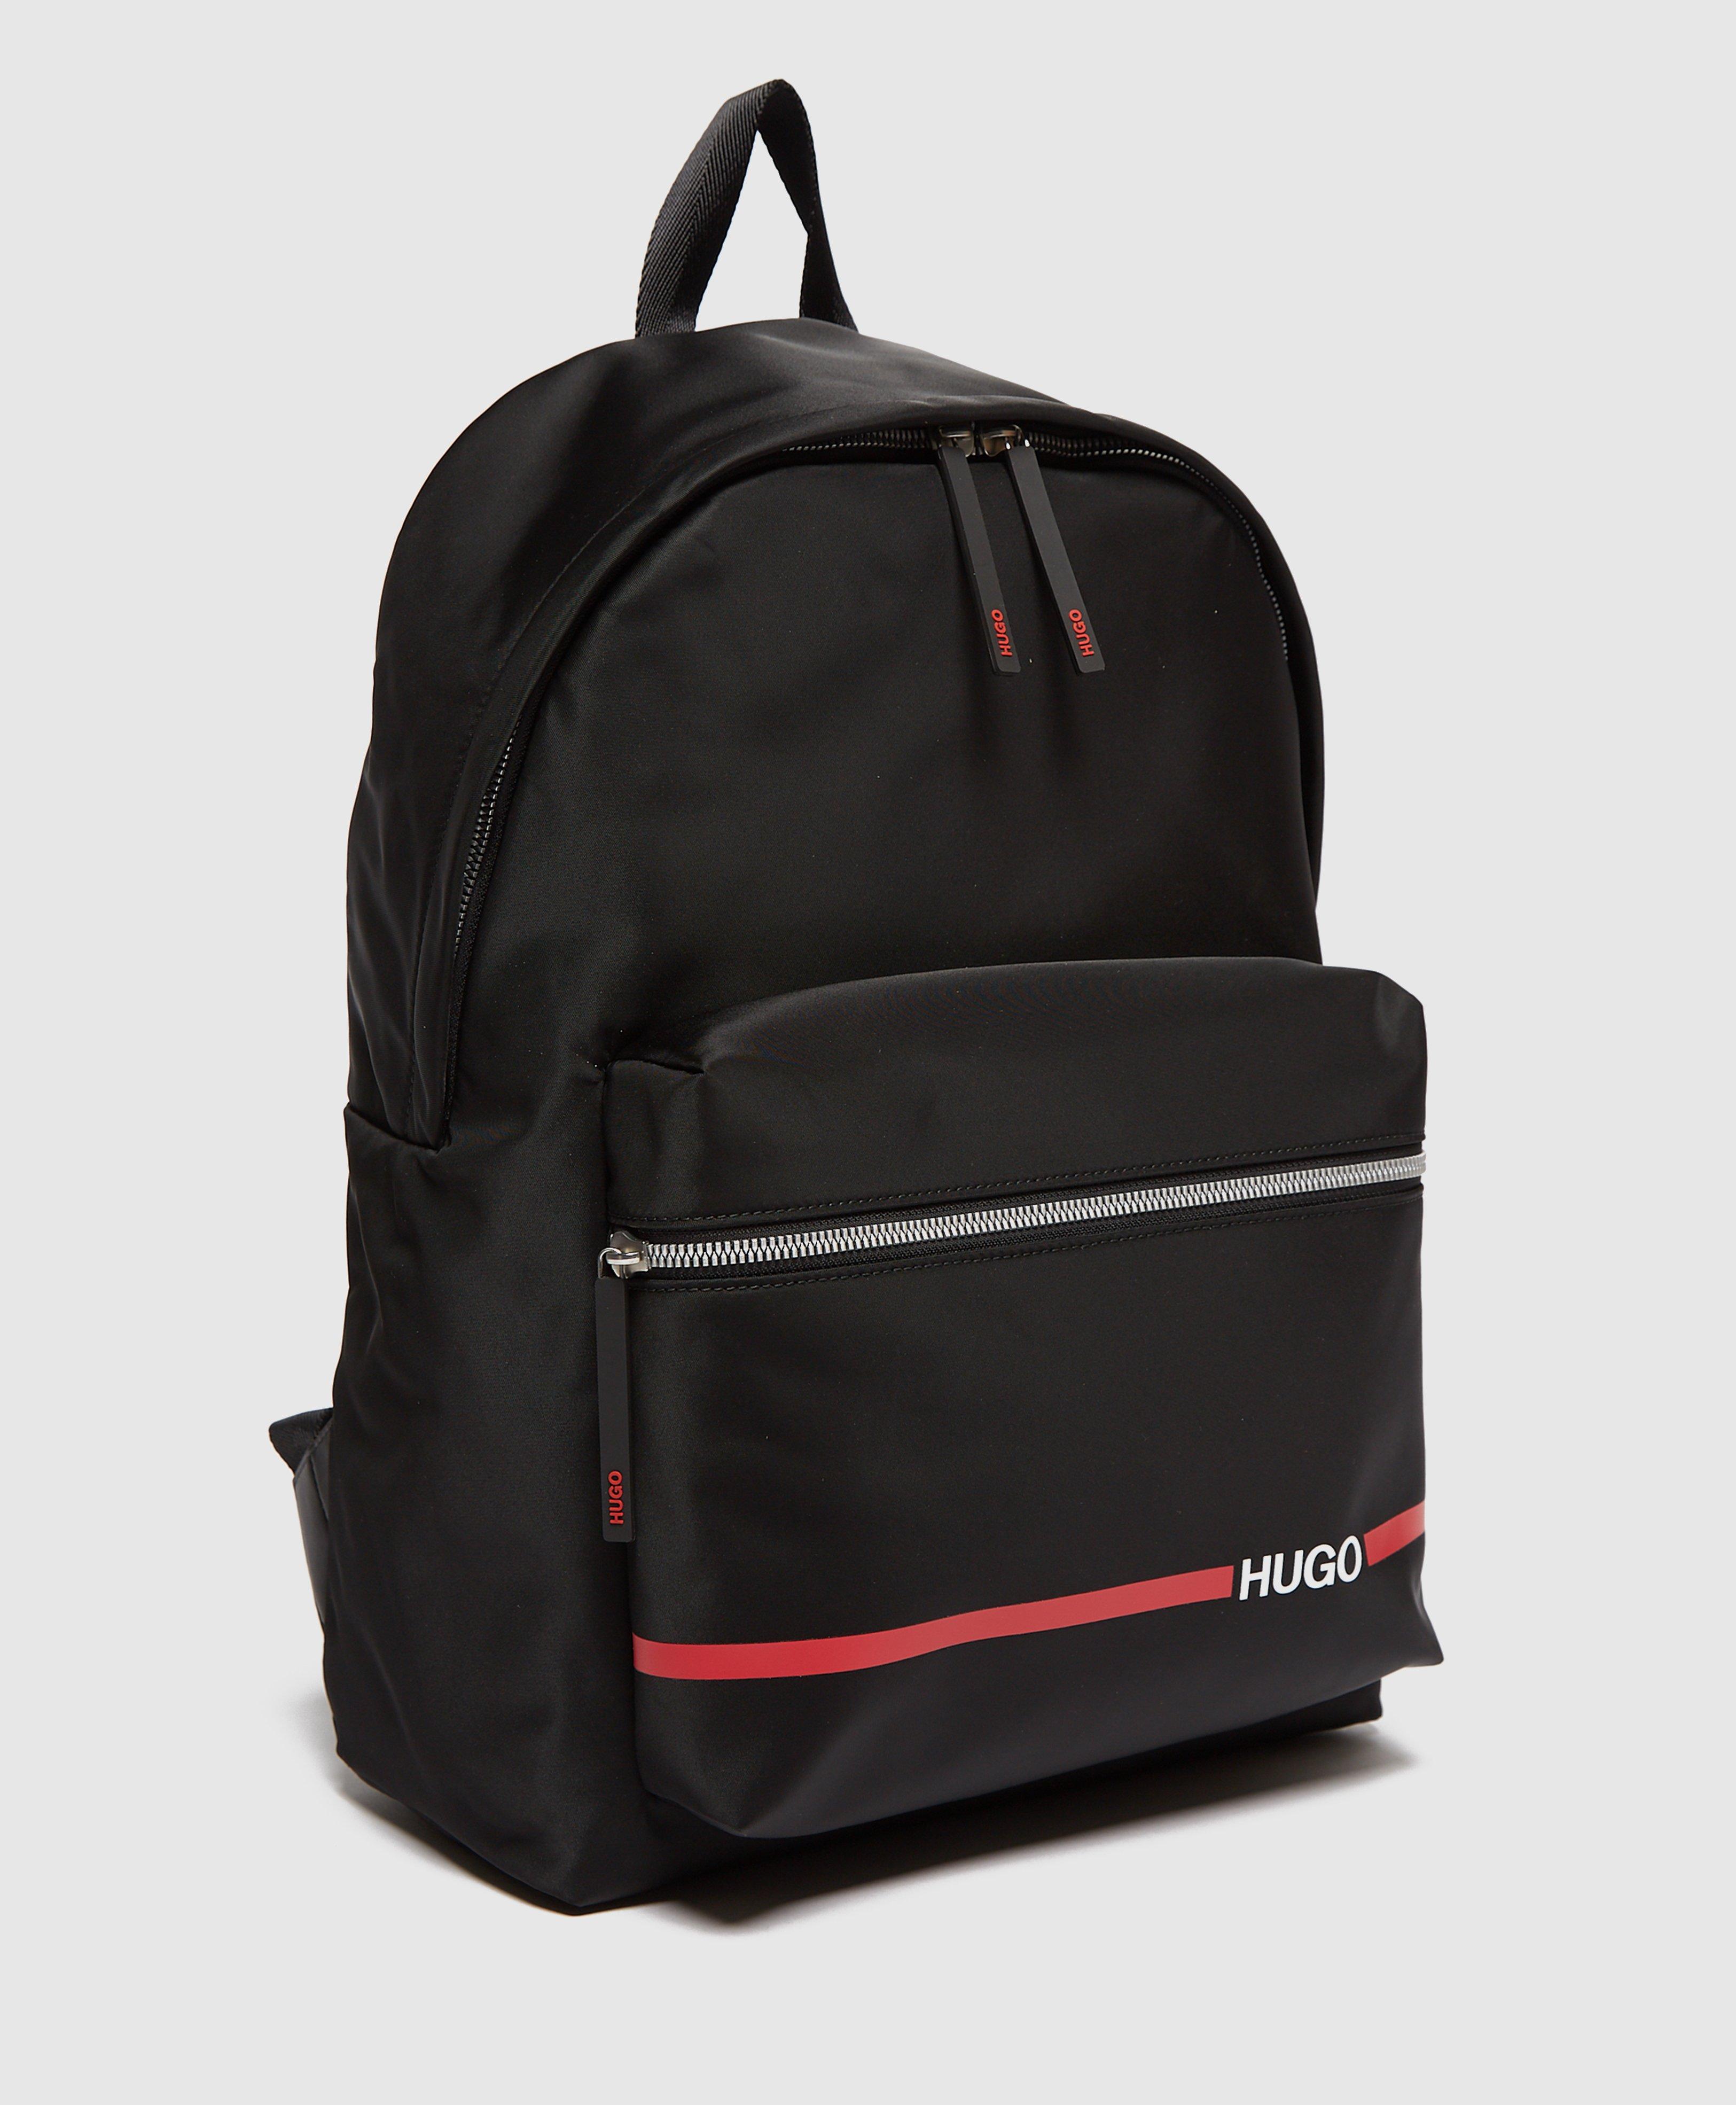 hugo record backpack